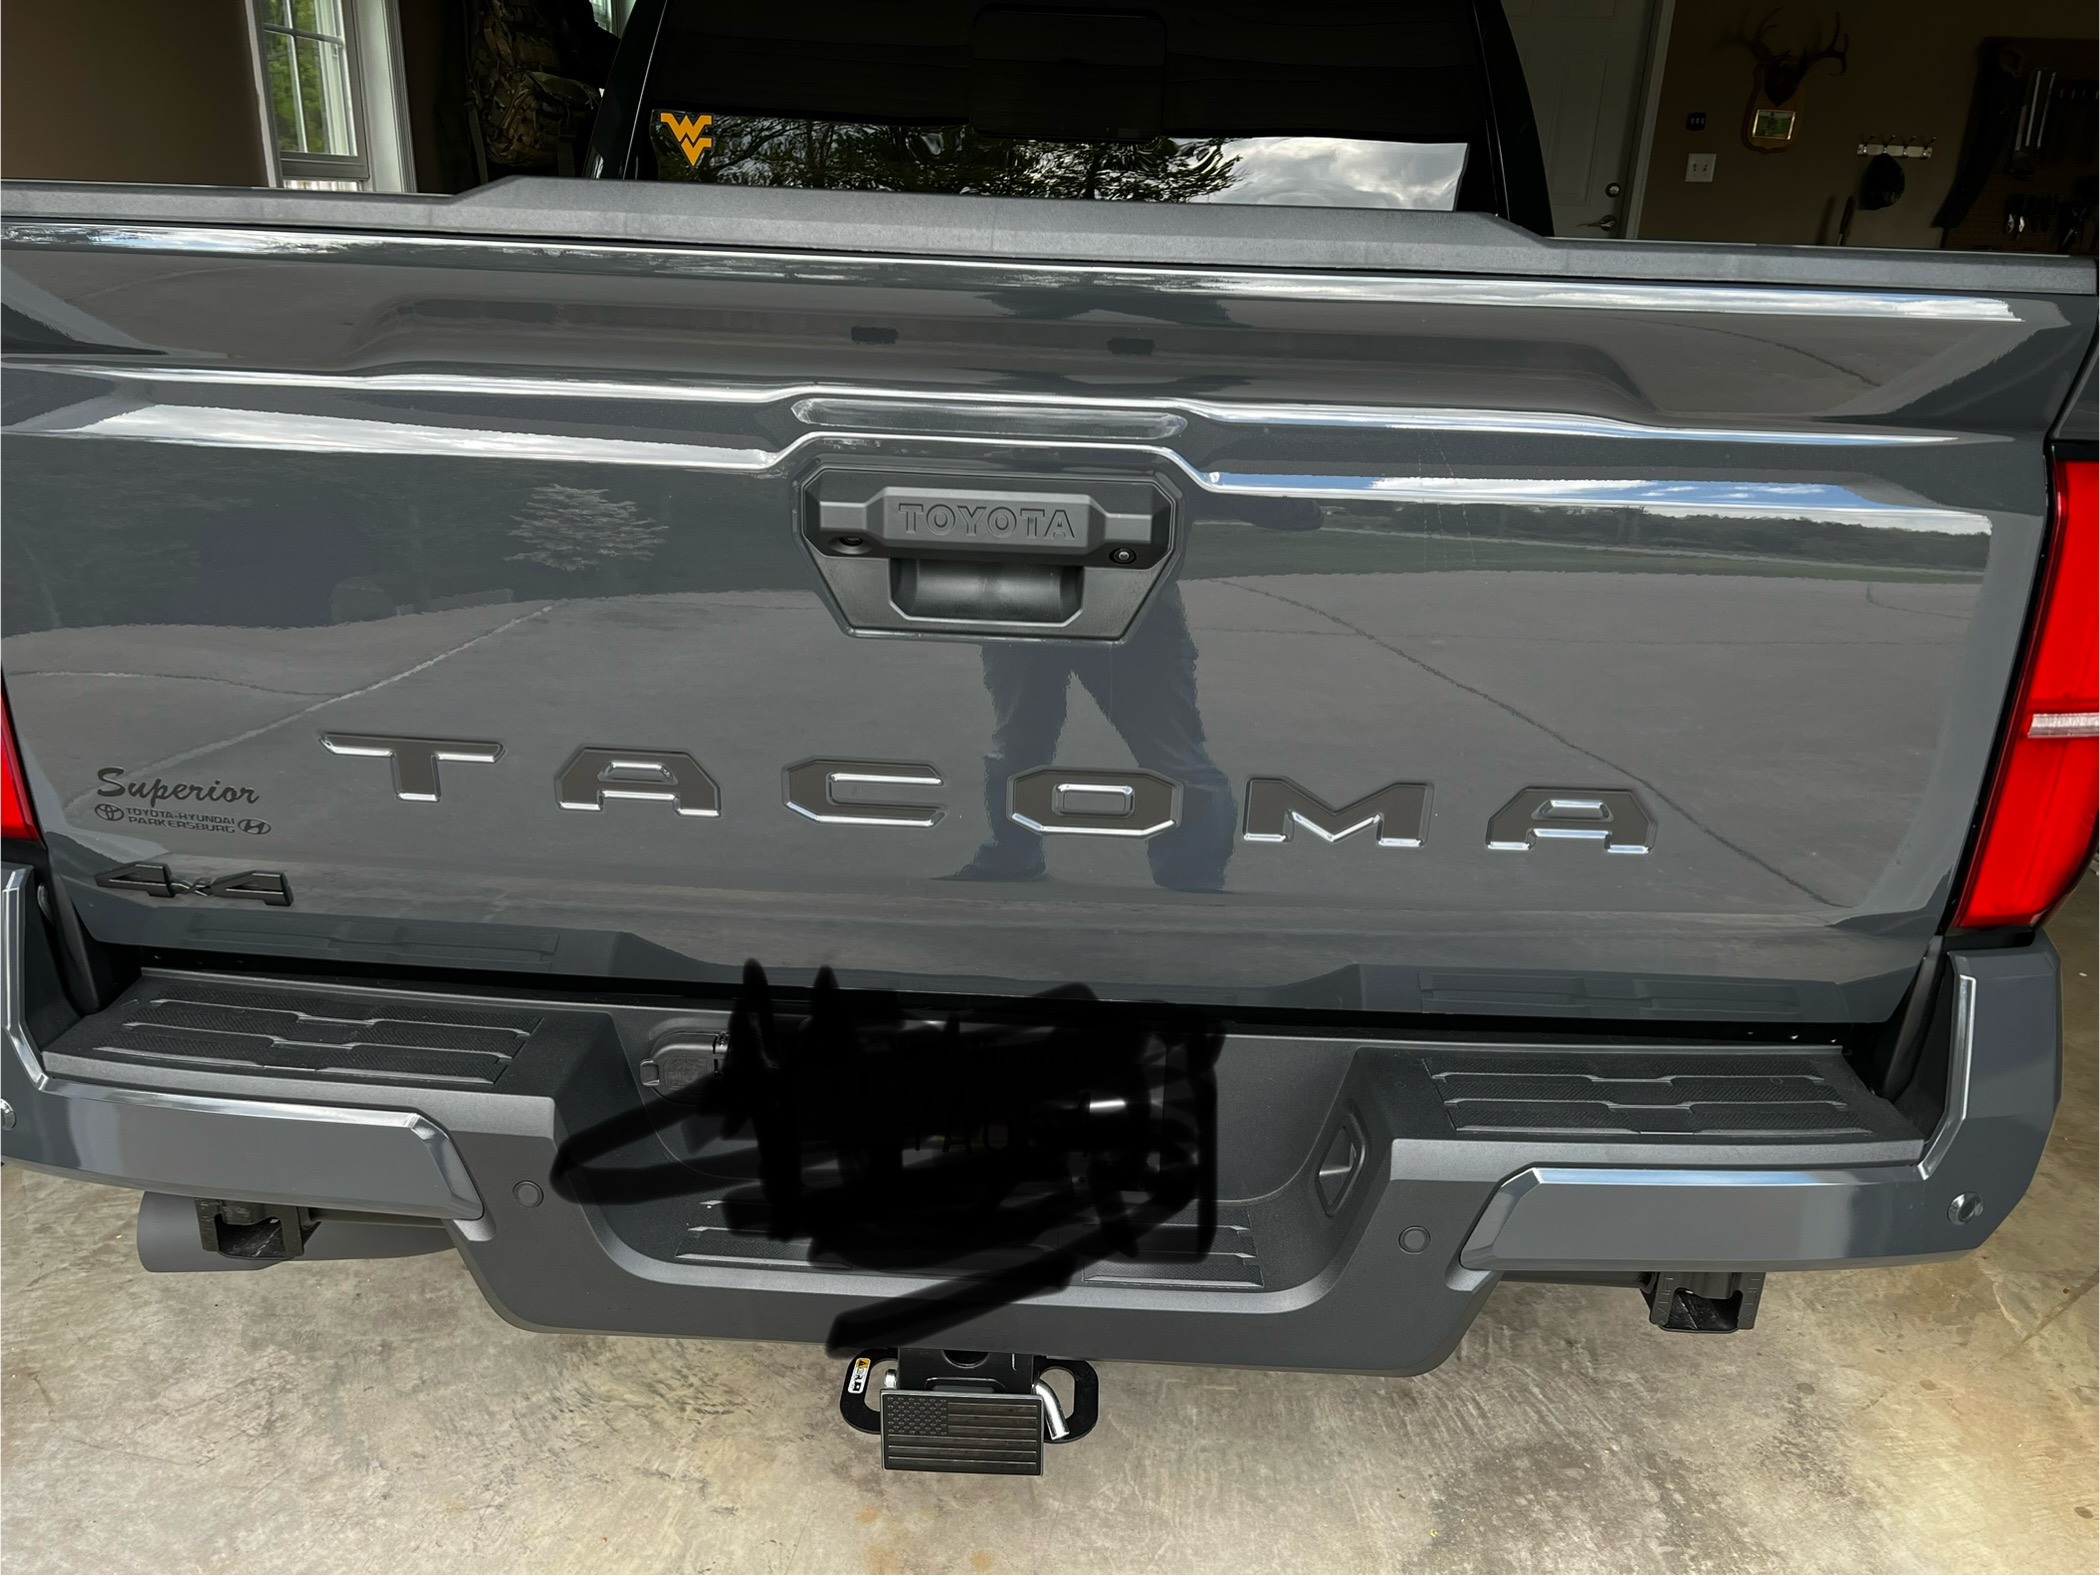 2024 Tacoma Plasti Dip Blackout \ Removing Chrome Toyota emblem on front grill IMG_5477